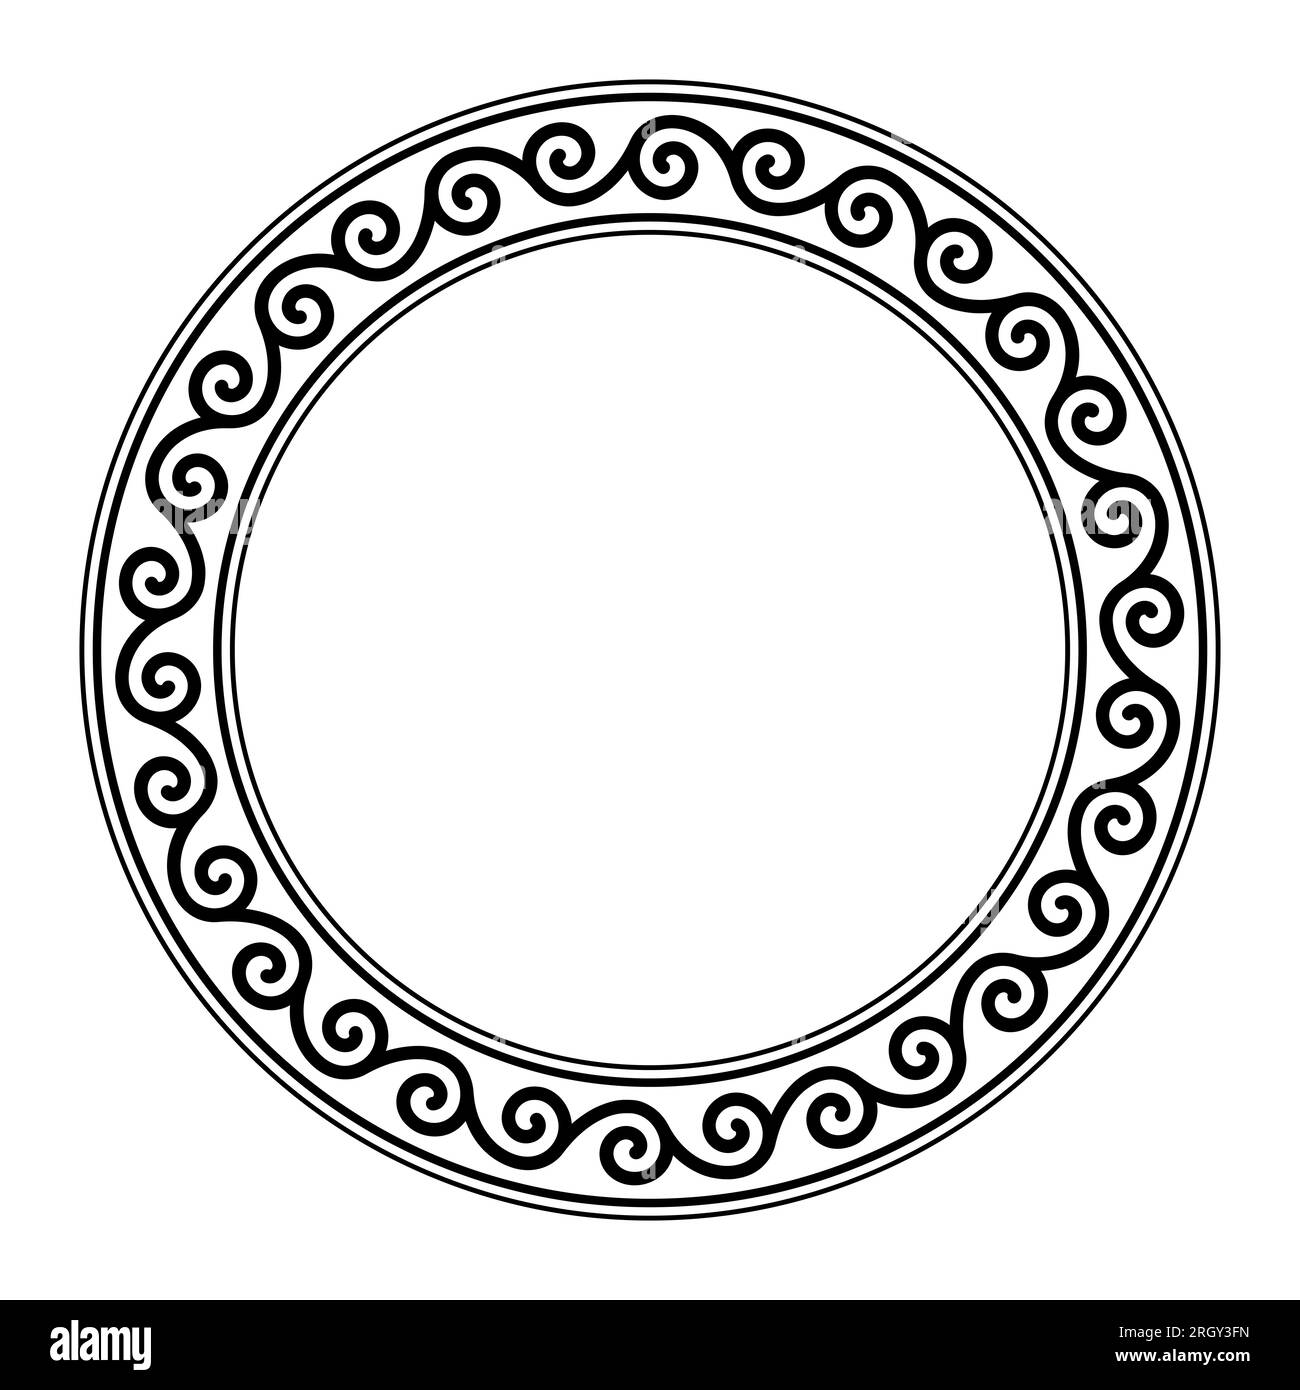 Motif en spirale sans couture, cadre de cercle. Bordure circulaire décorative avec motif en spirale répété, reliés les uns aux autres dans une séquence sans fin. Banque D'Images